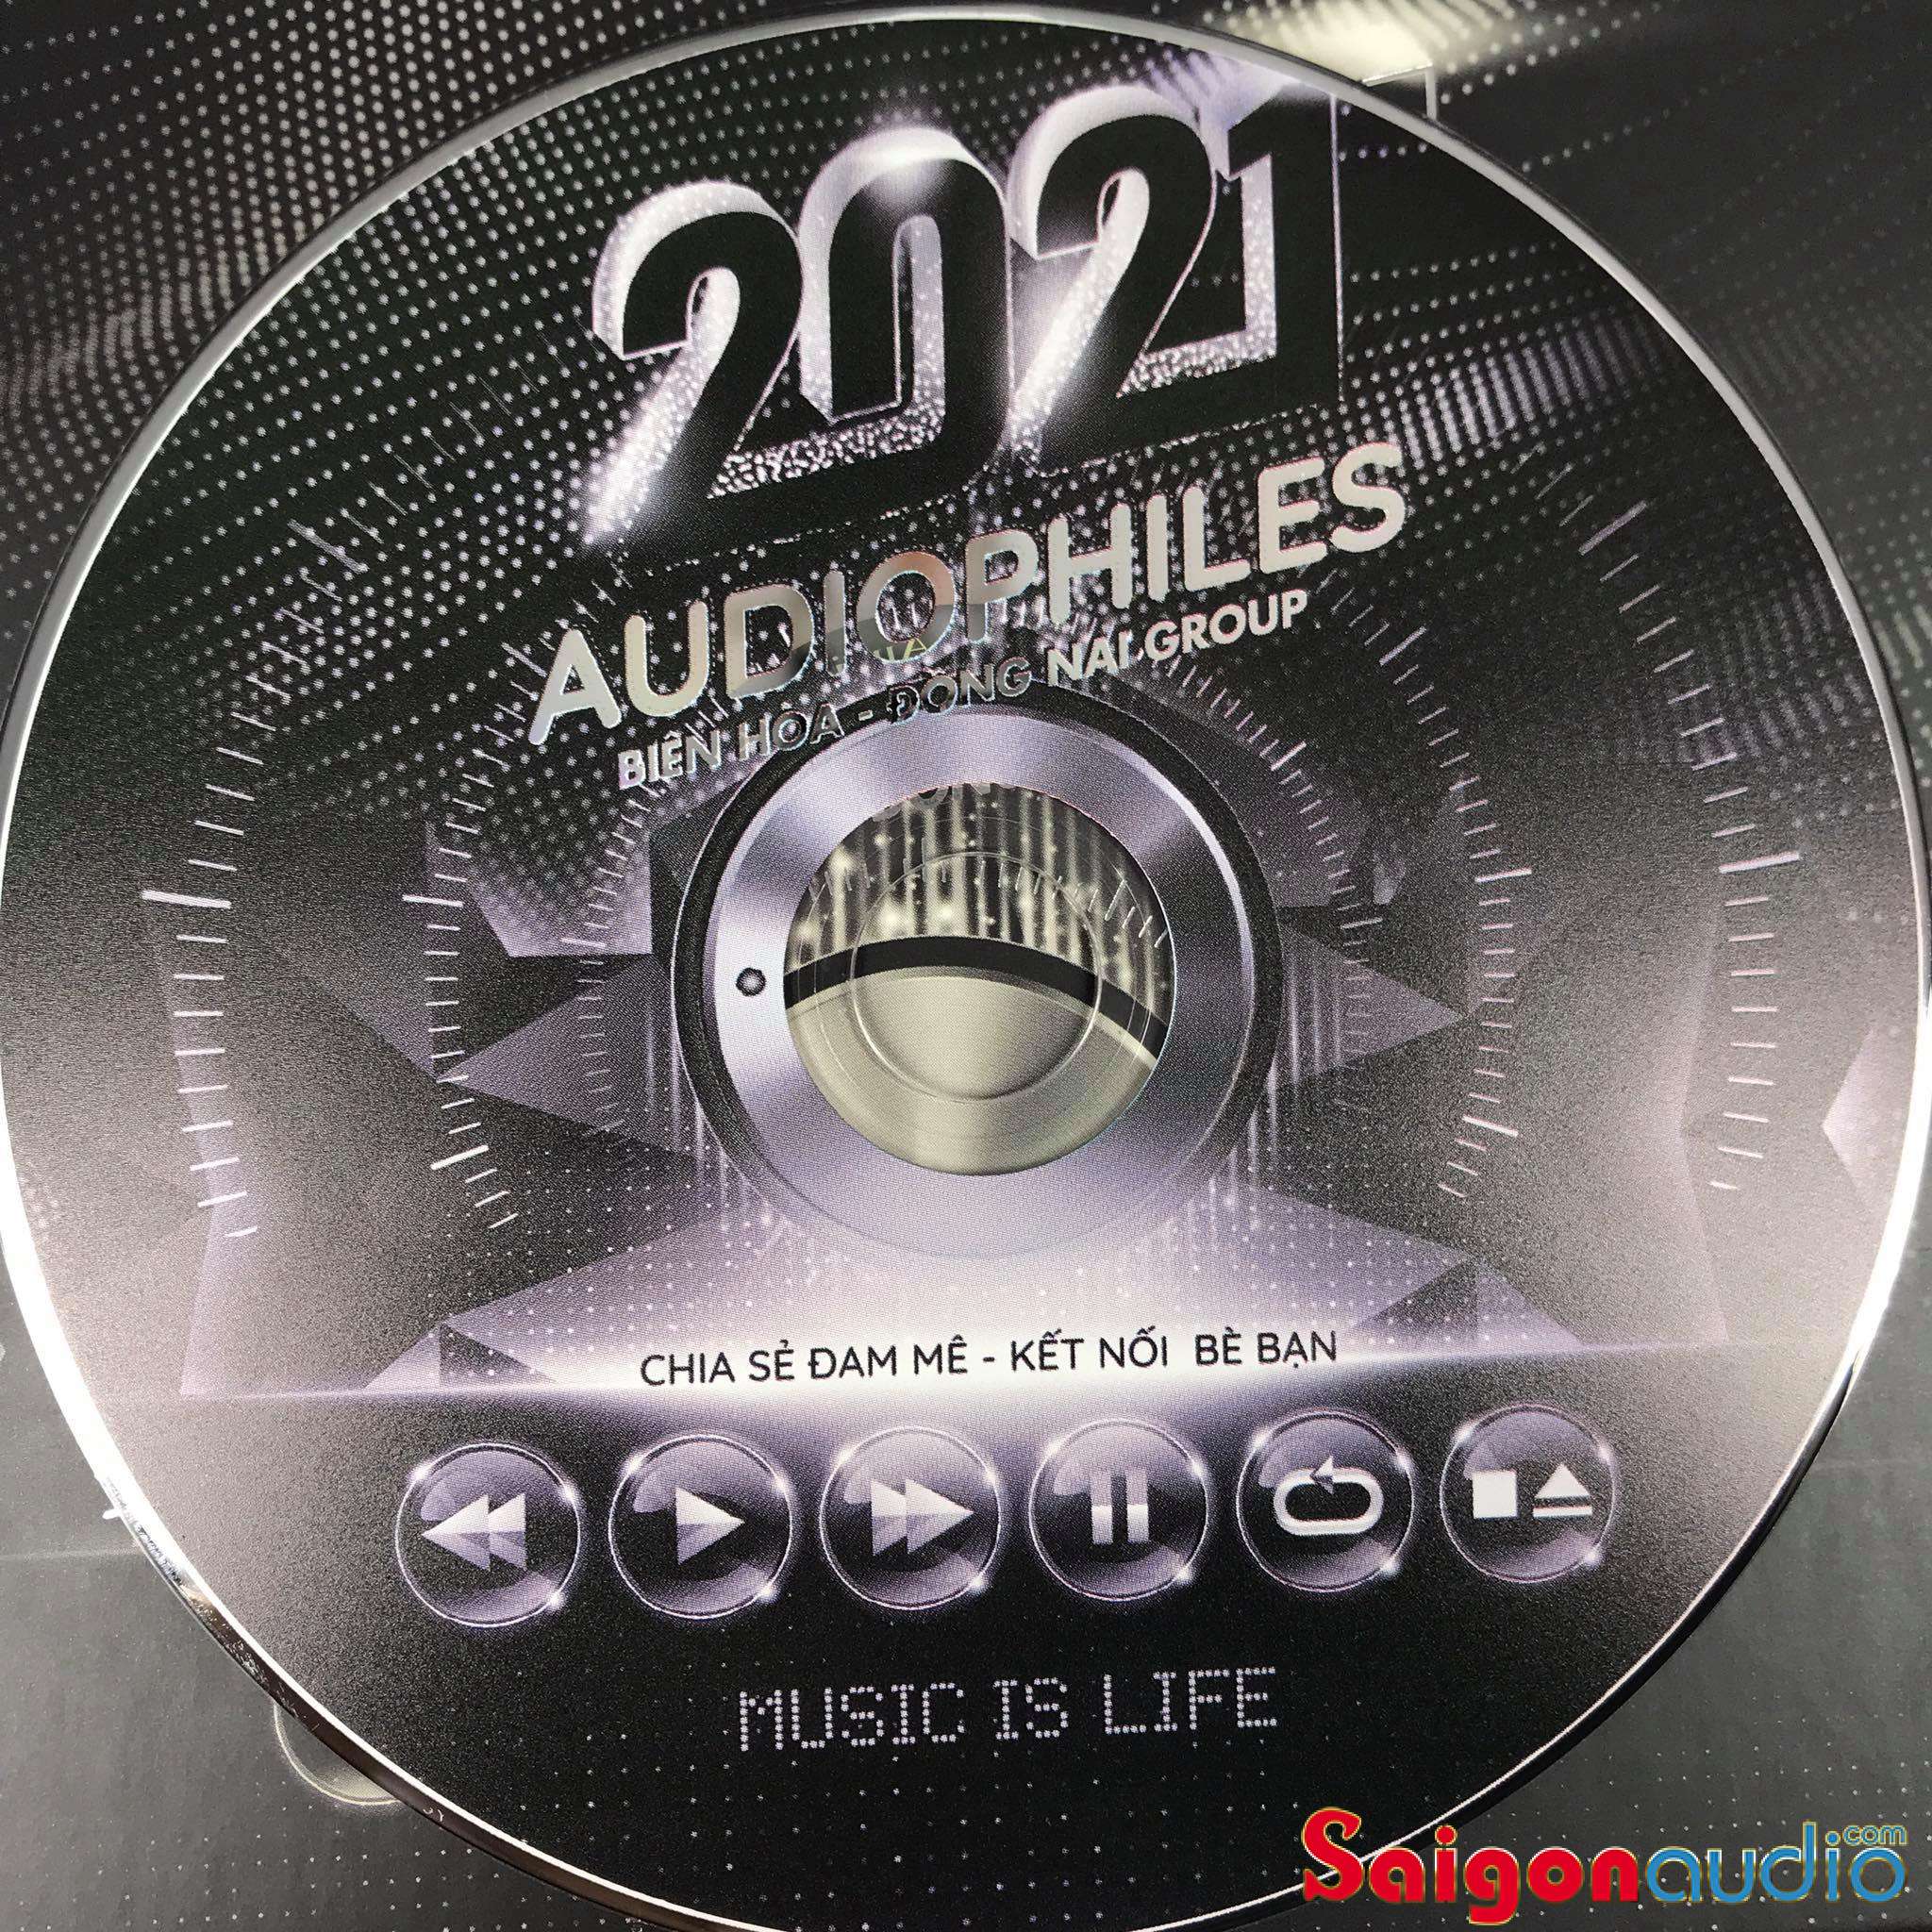 Đĩa CD nhạc Biên Hoà Đồng Nai Audiophile 7th 2021 (Free ship khi mua 2 đĩa CD cùng hoặc khác loại)